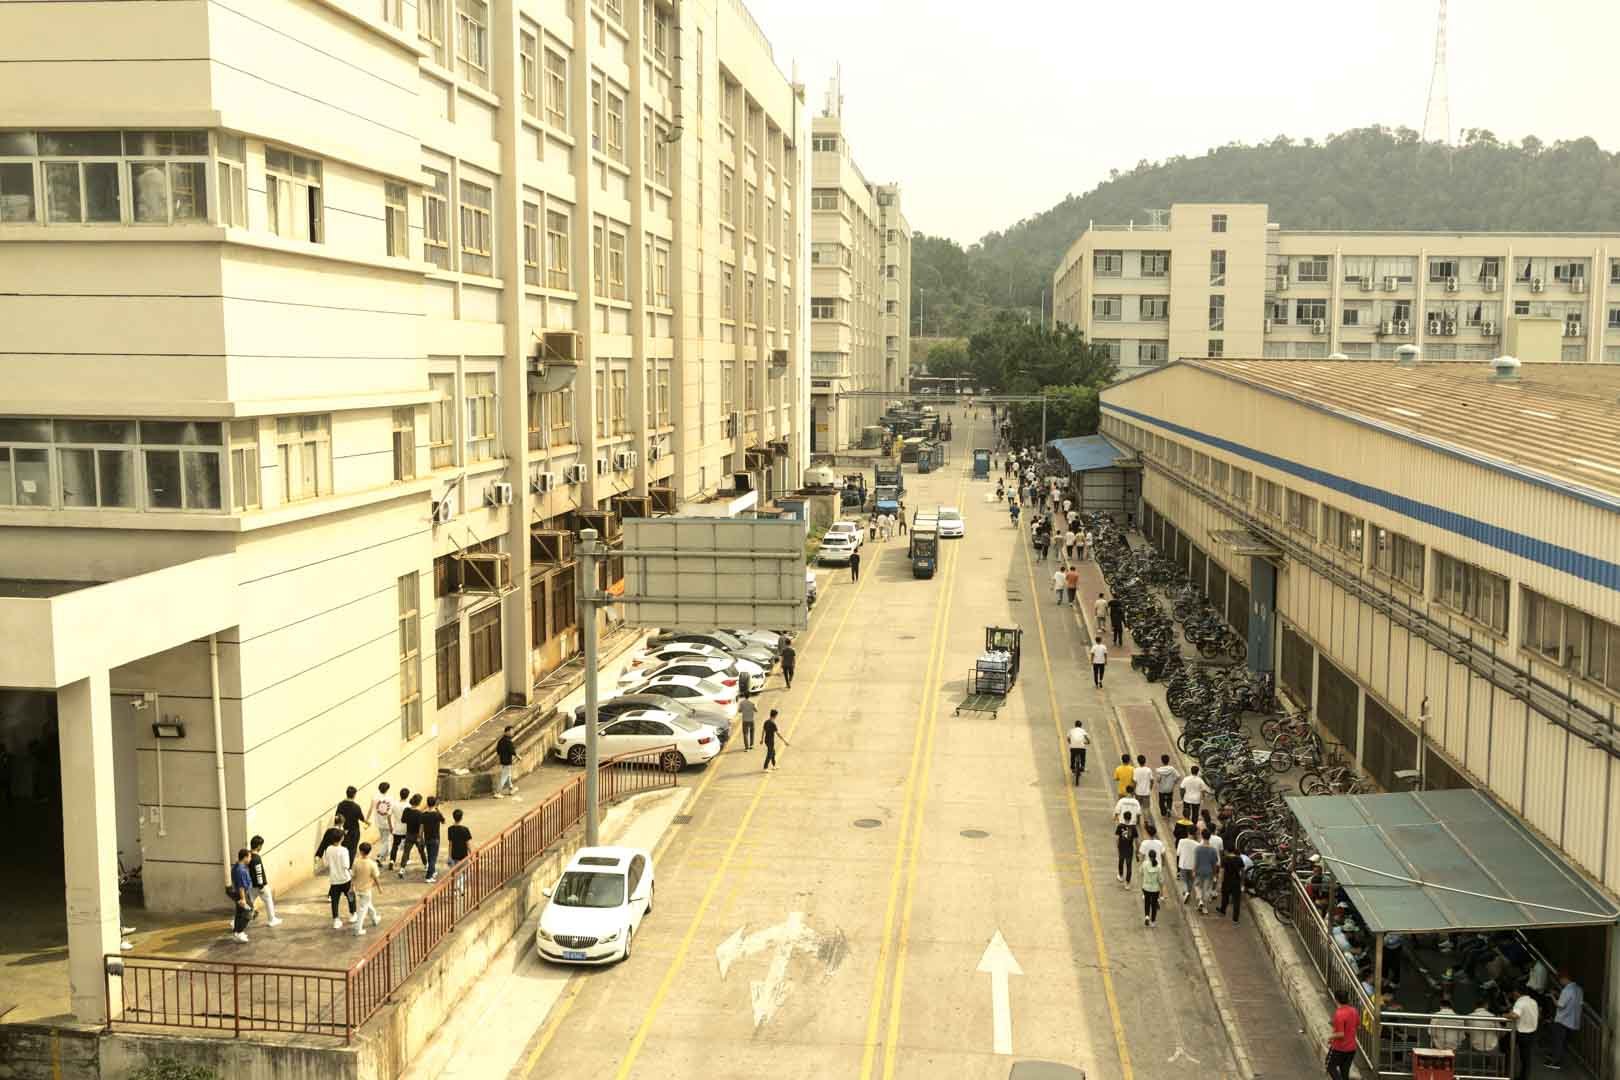 BYD factory in Shenzhen